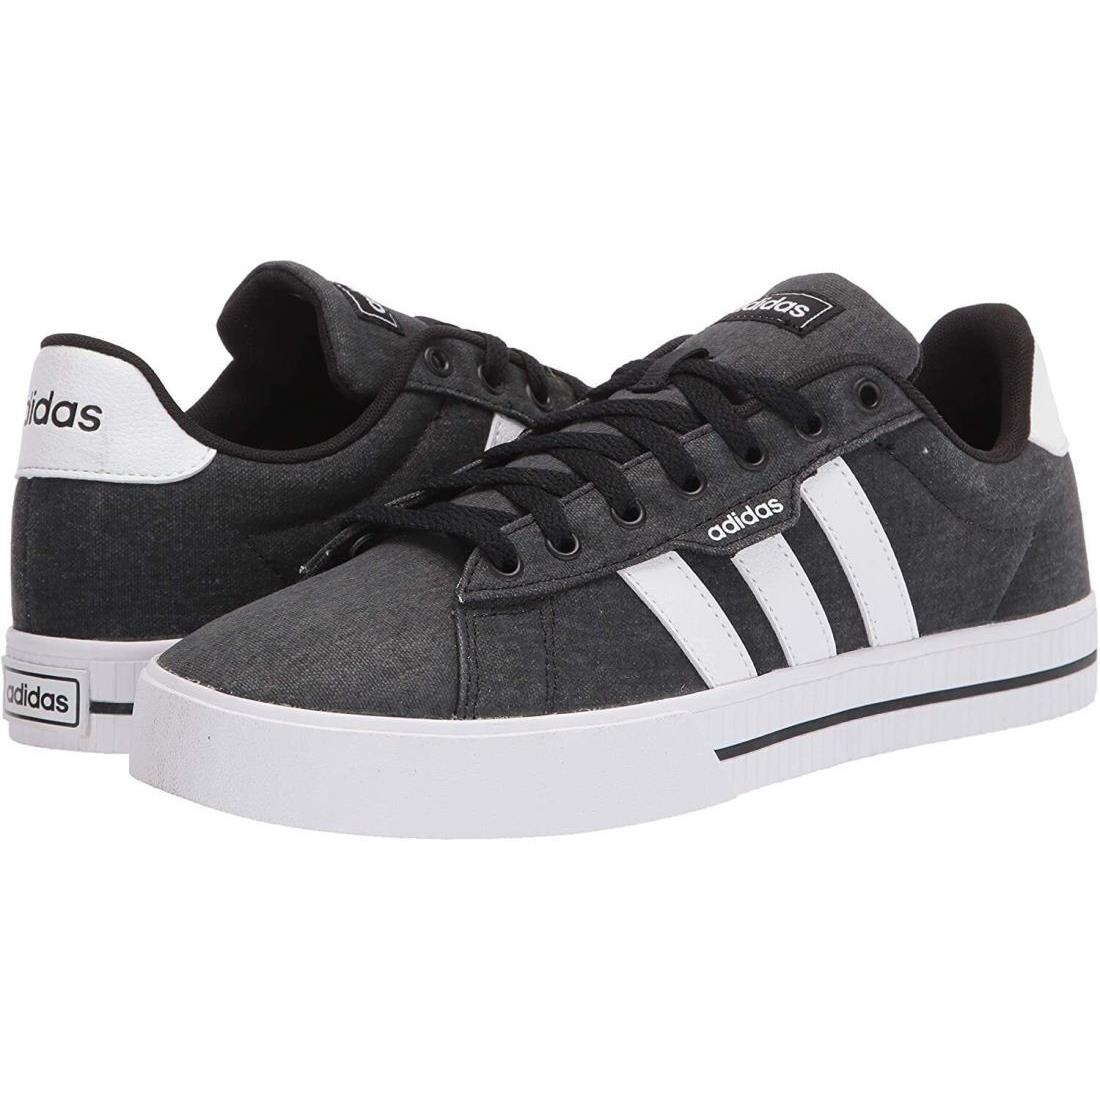 Man Adidas Daily 3.0 Skate Shoe FW7033 Black/white/black - Black / White